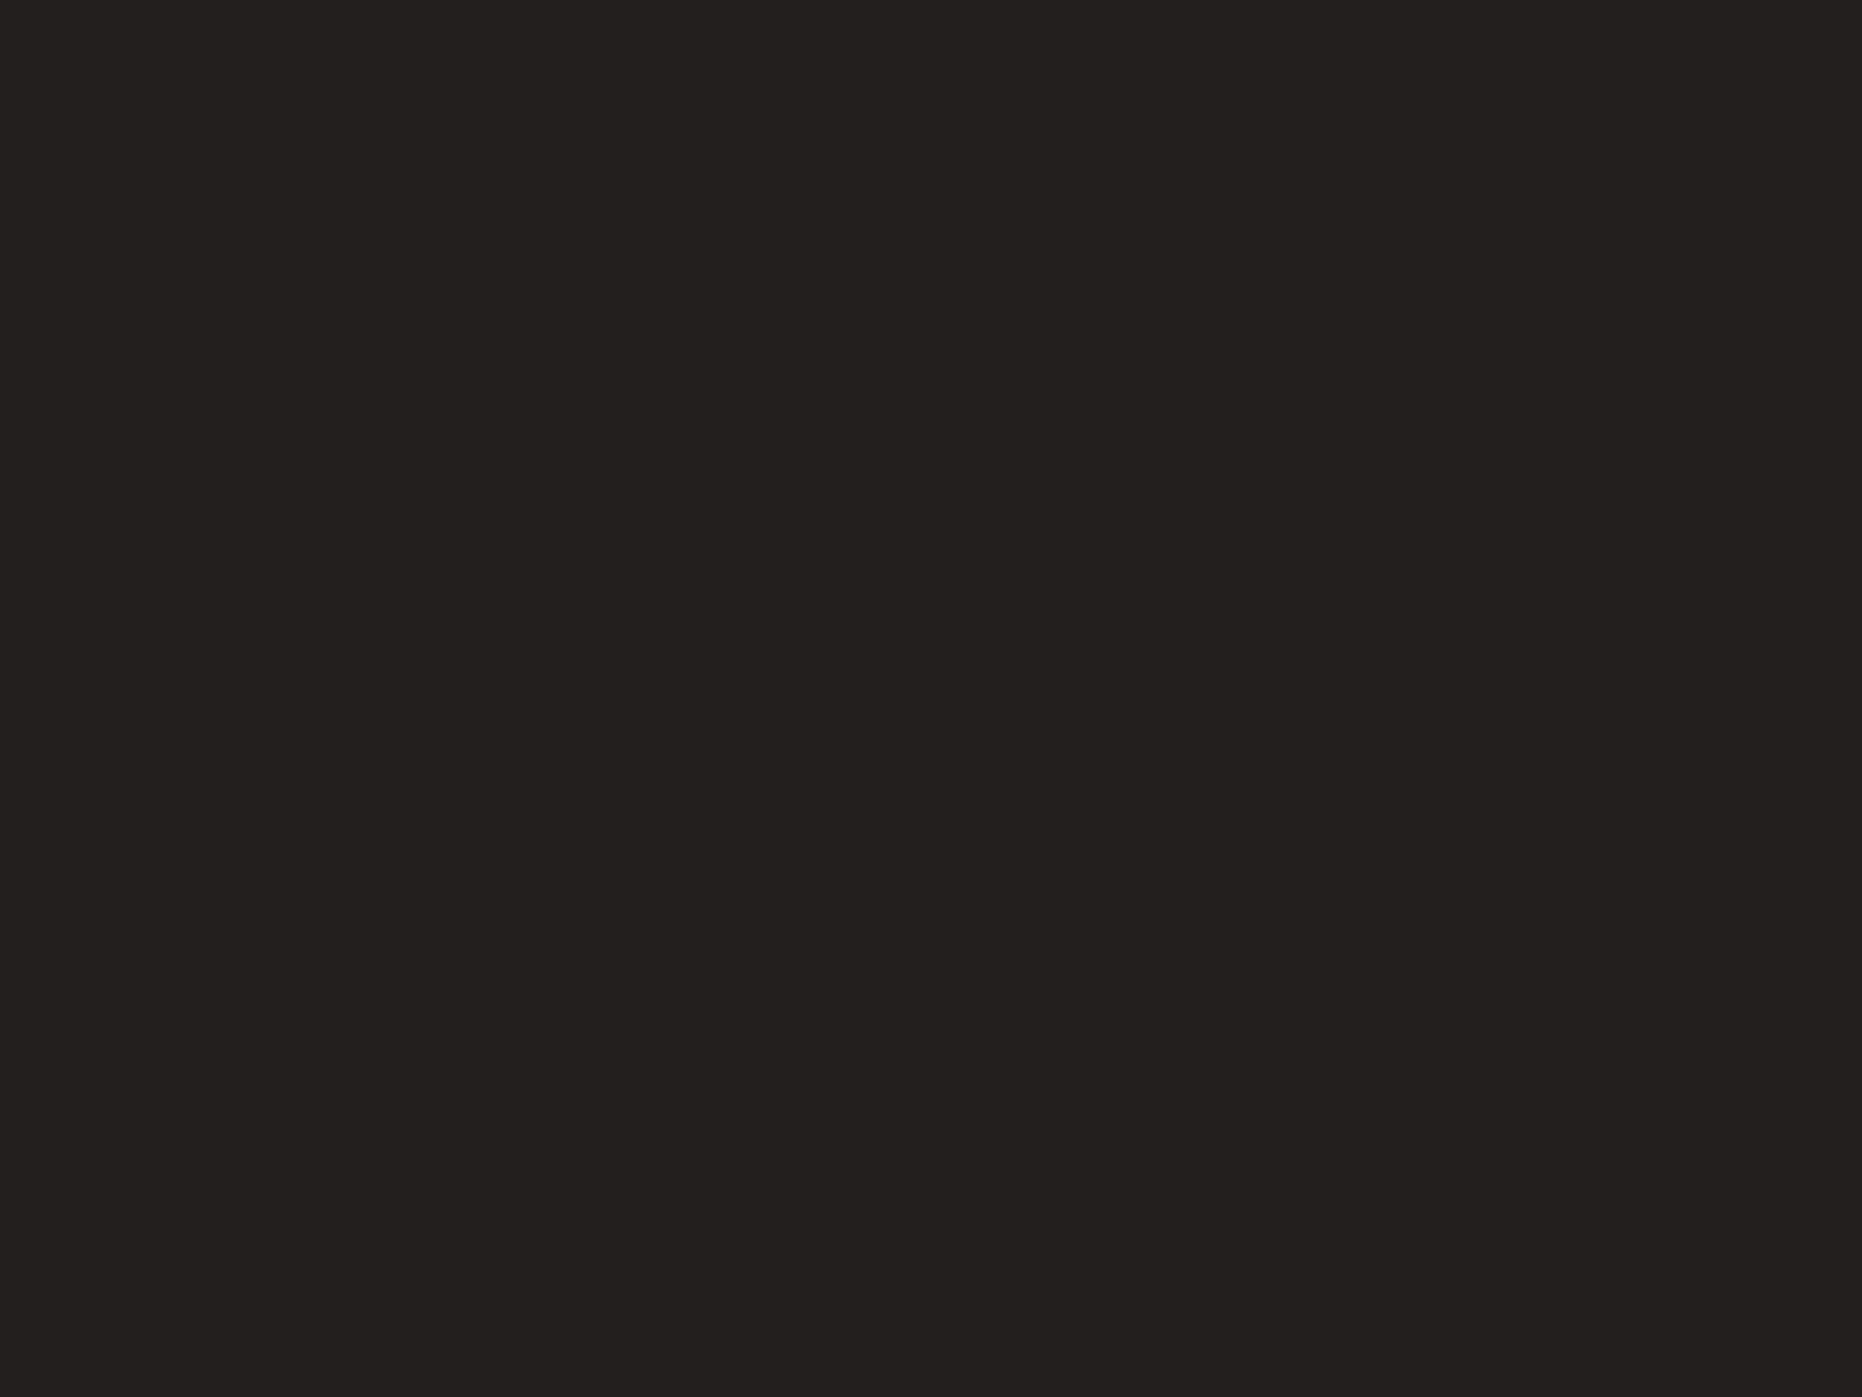 Юрий Рыжик. Майская ночь. Иллюстрация к произведению Николая Гоголя «Вечера на хуторе близ Диканьки». XX век. Картинная галерея, Усть-Илимск, Иркутская область